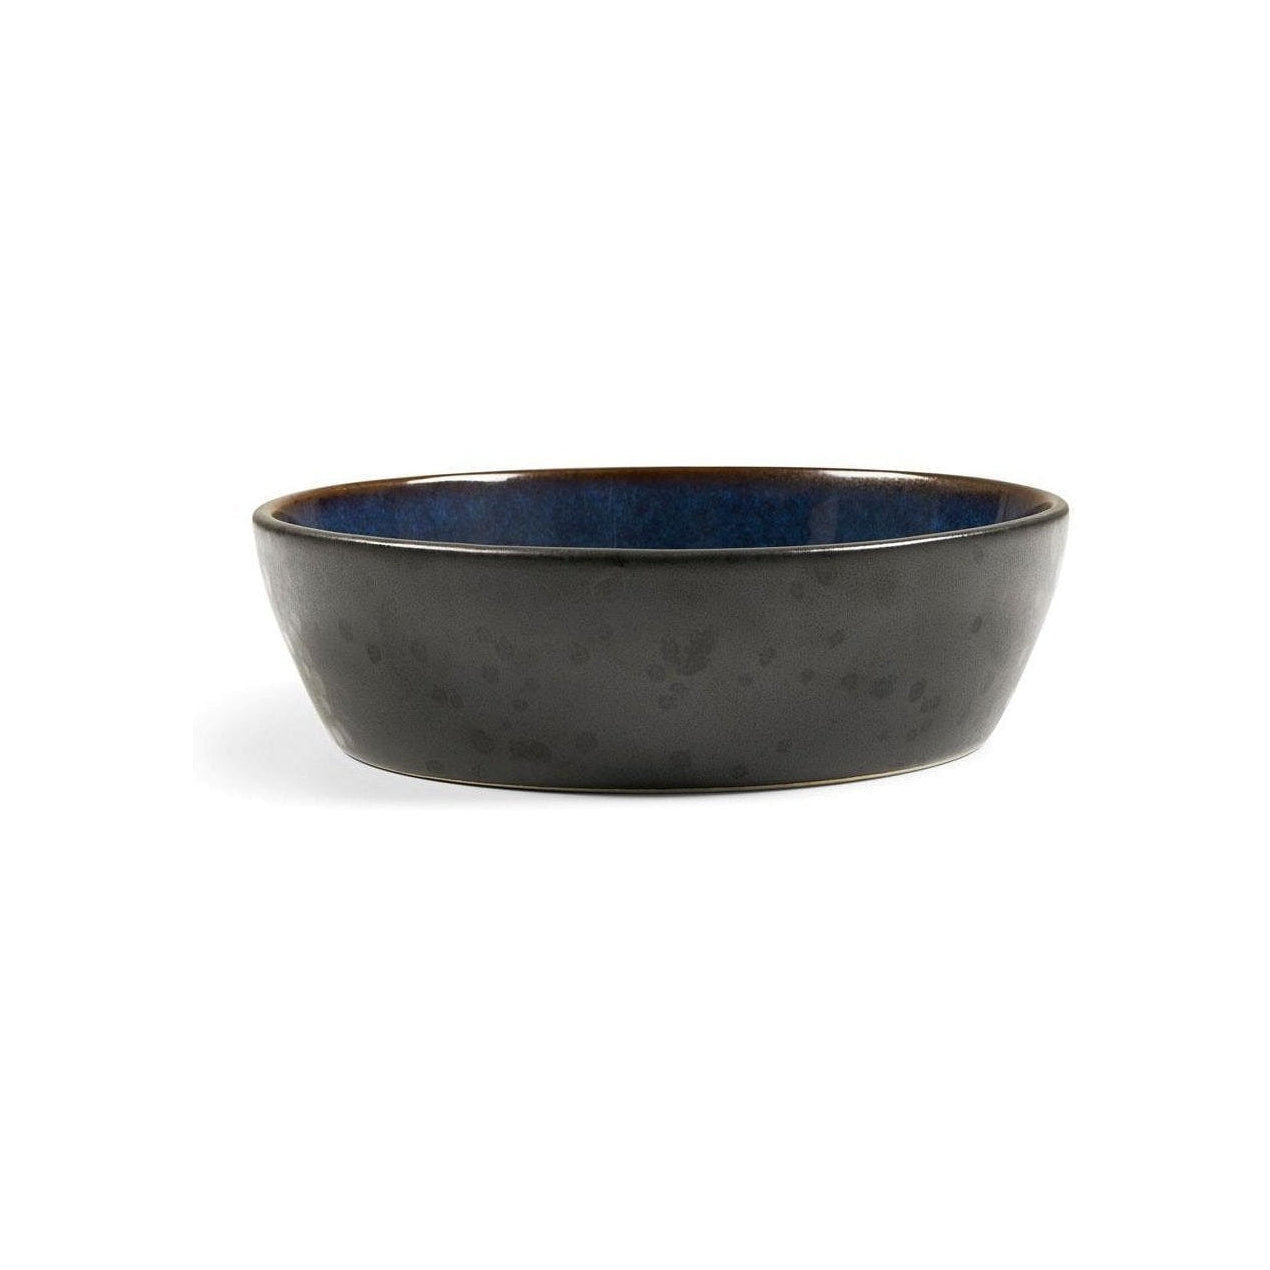 Bitz Polévka mísa, černá/tmavě modrá, Ø 18 cm